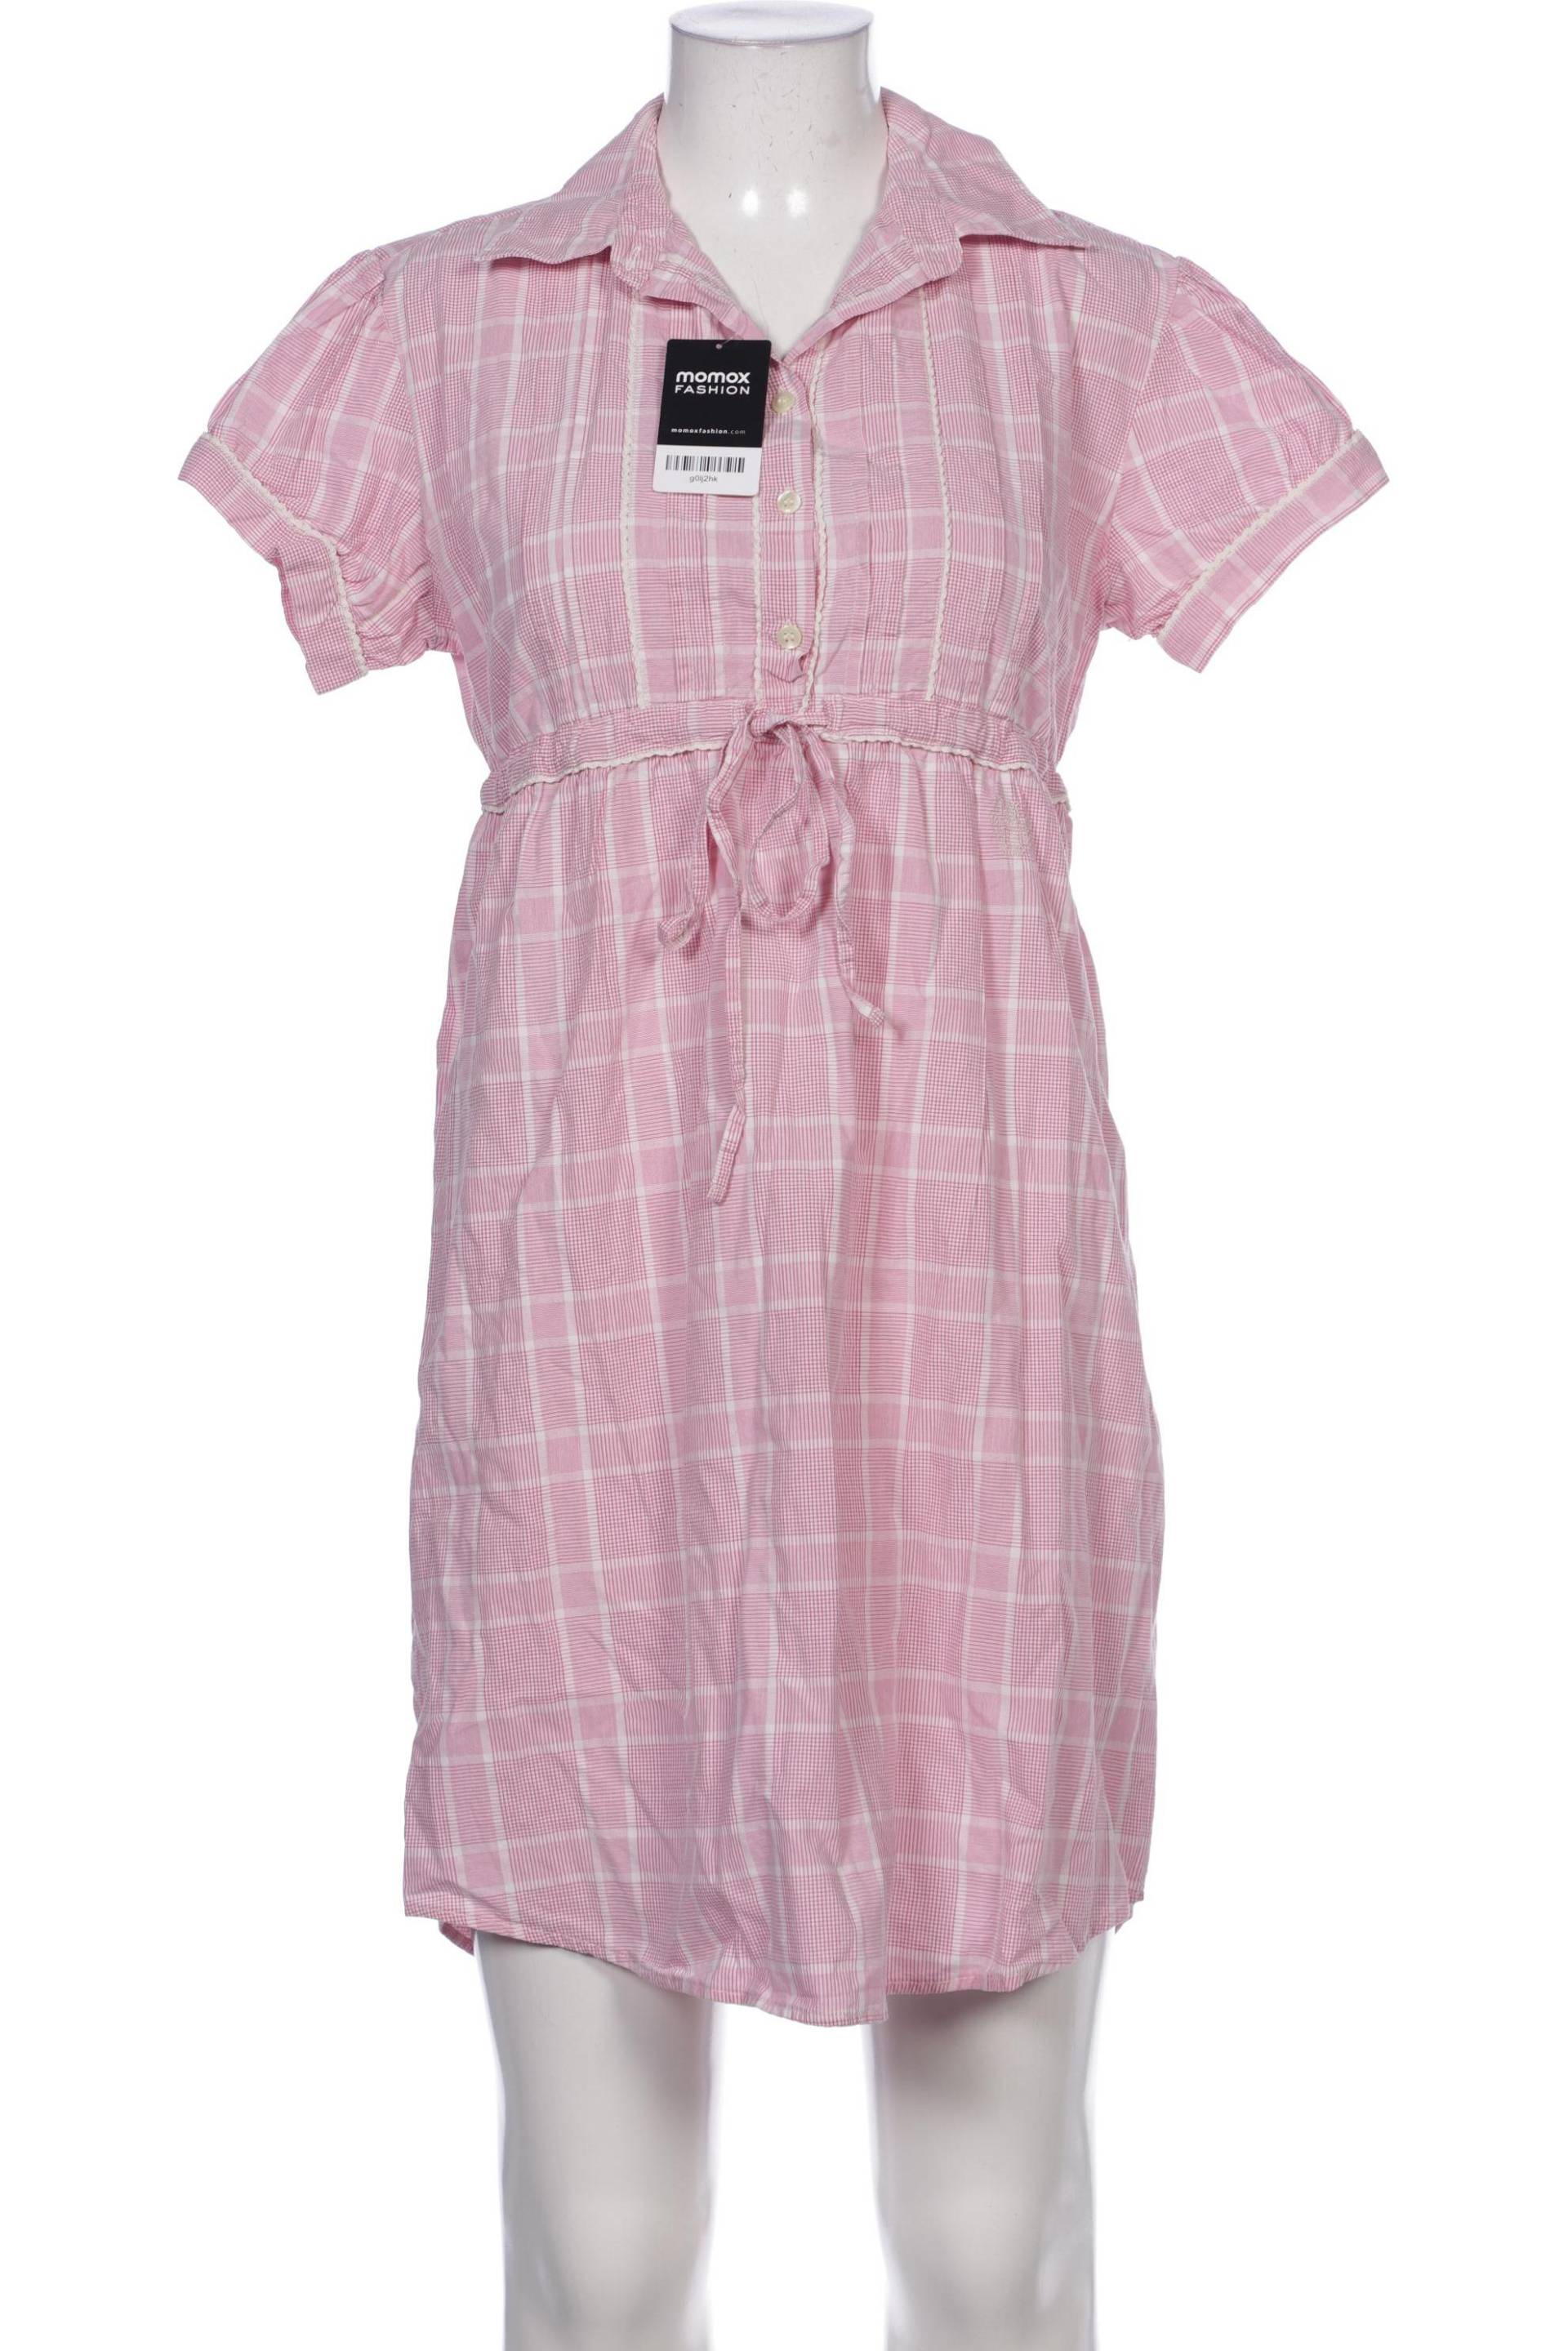 Luis Trenker Damen Kleid, pink, Gr. 42 von Luis Trenker